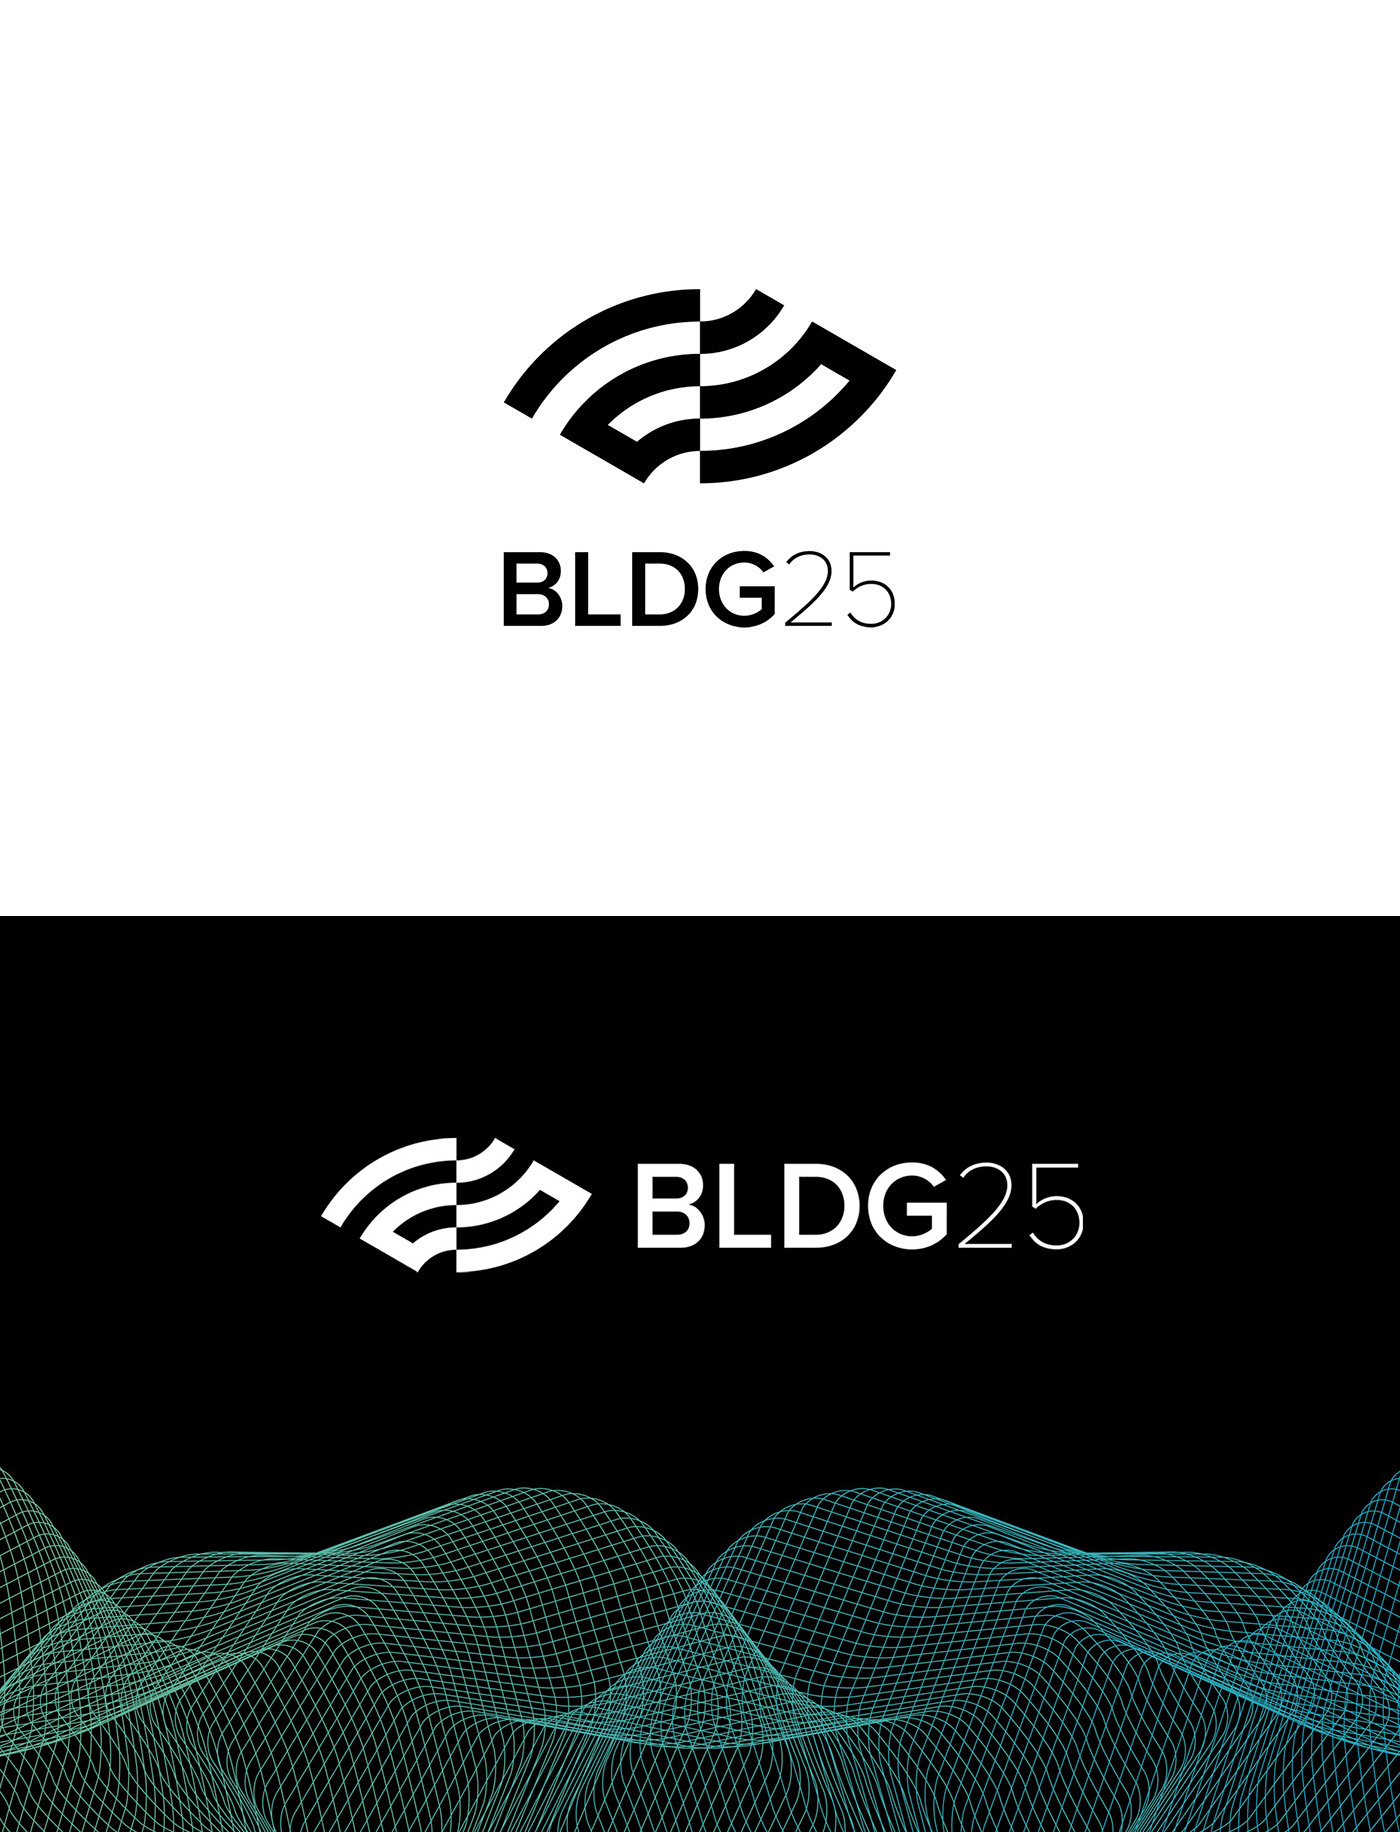 BLDG25软件技术公司品牌视觉设计